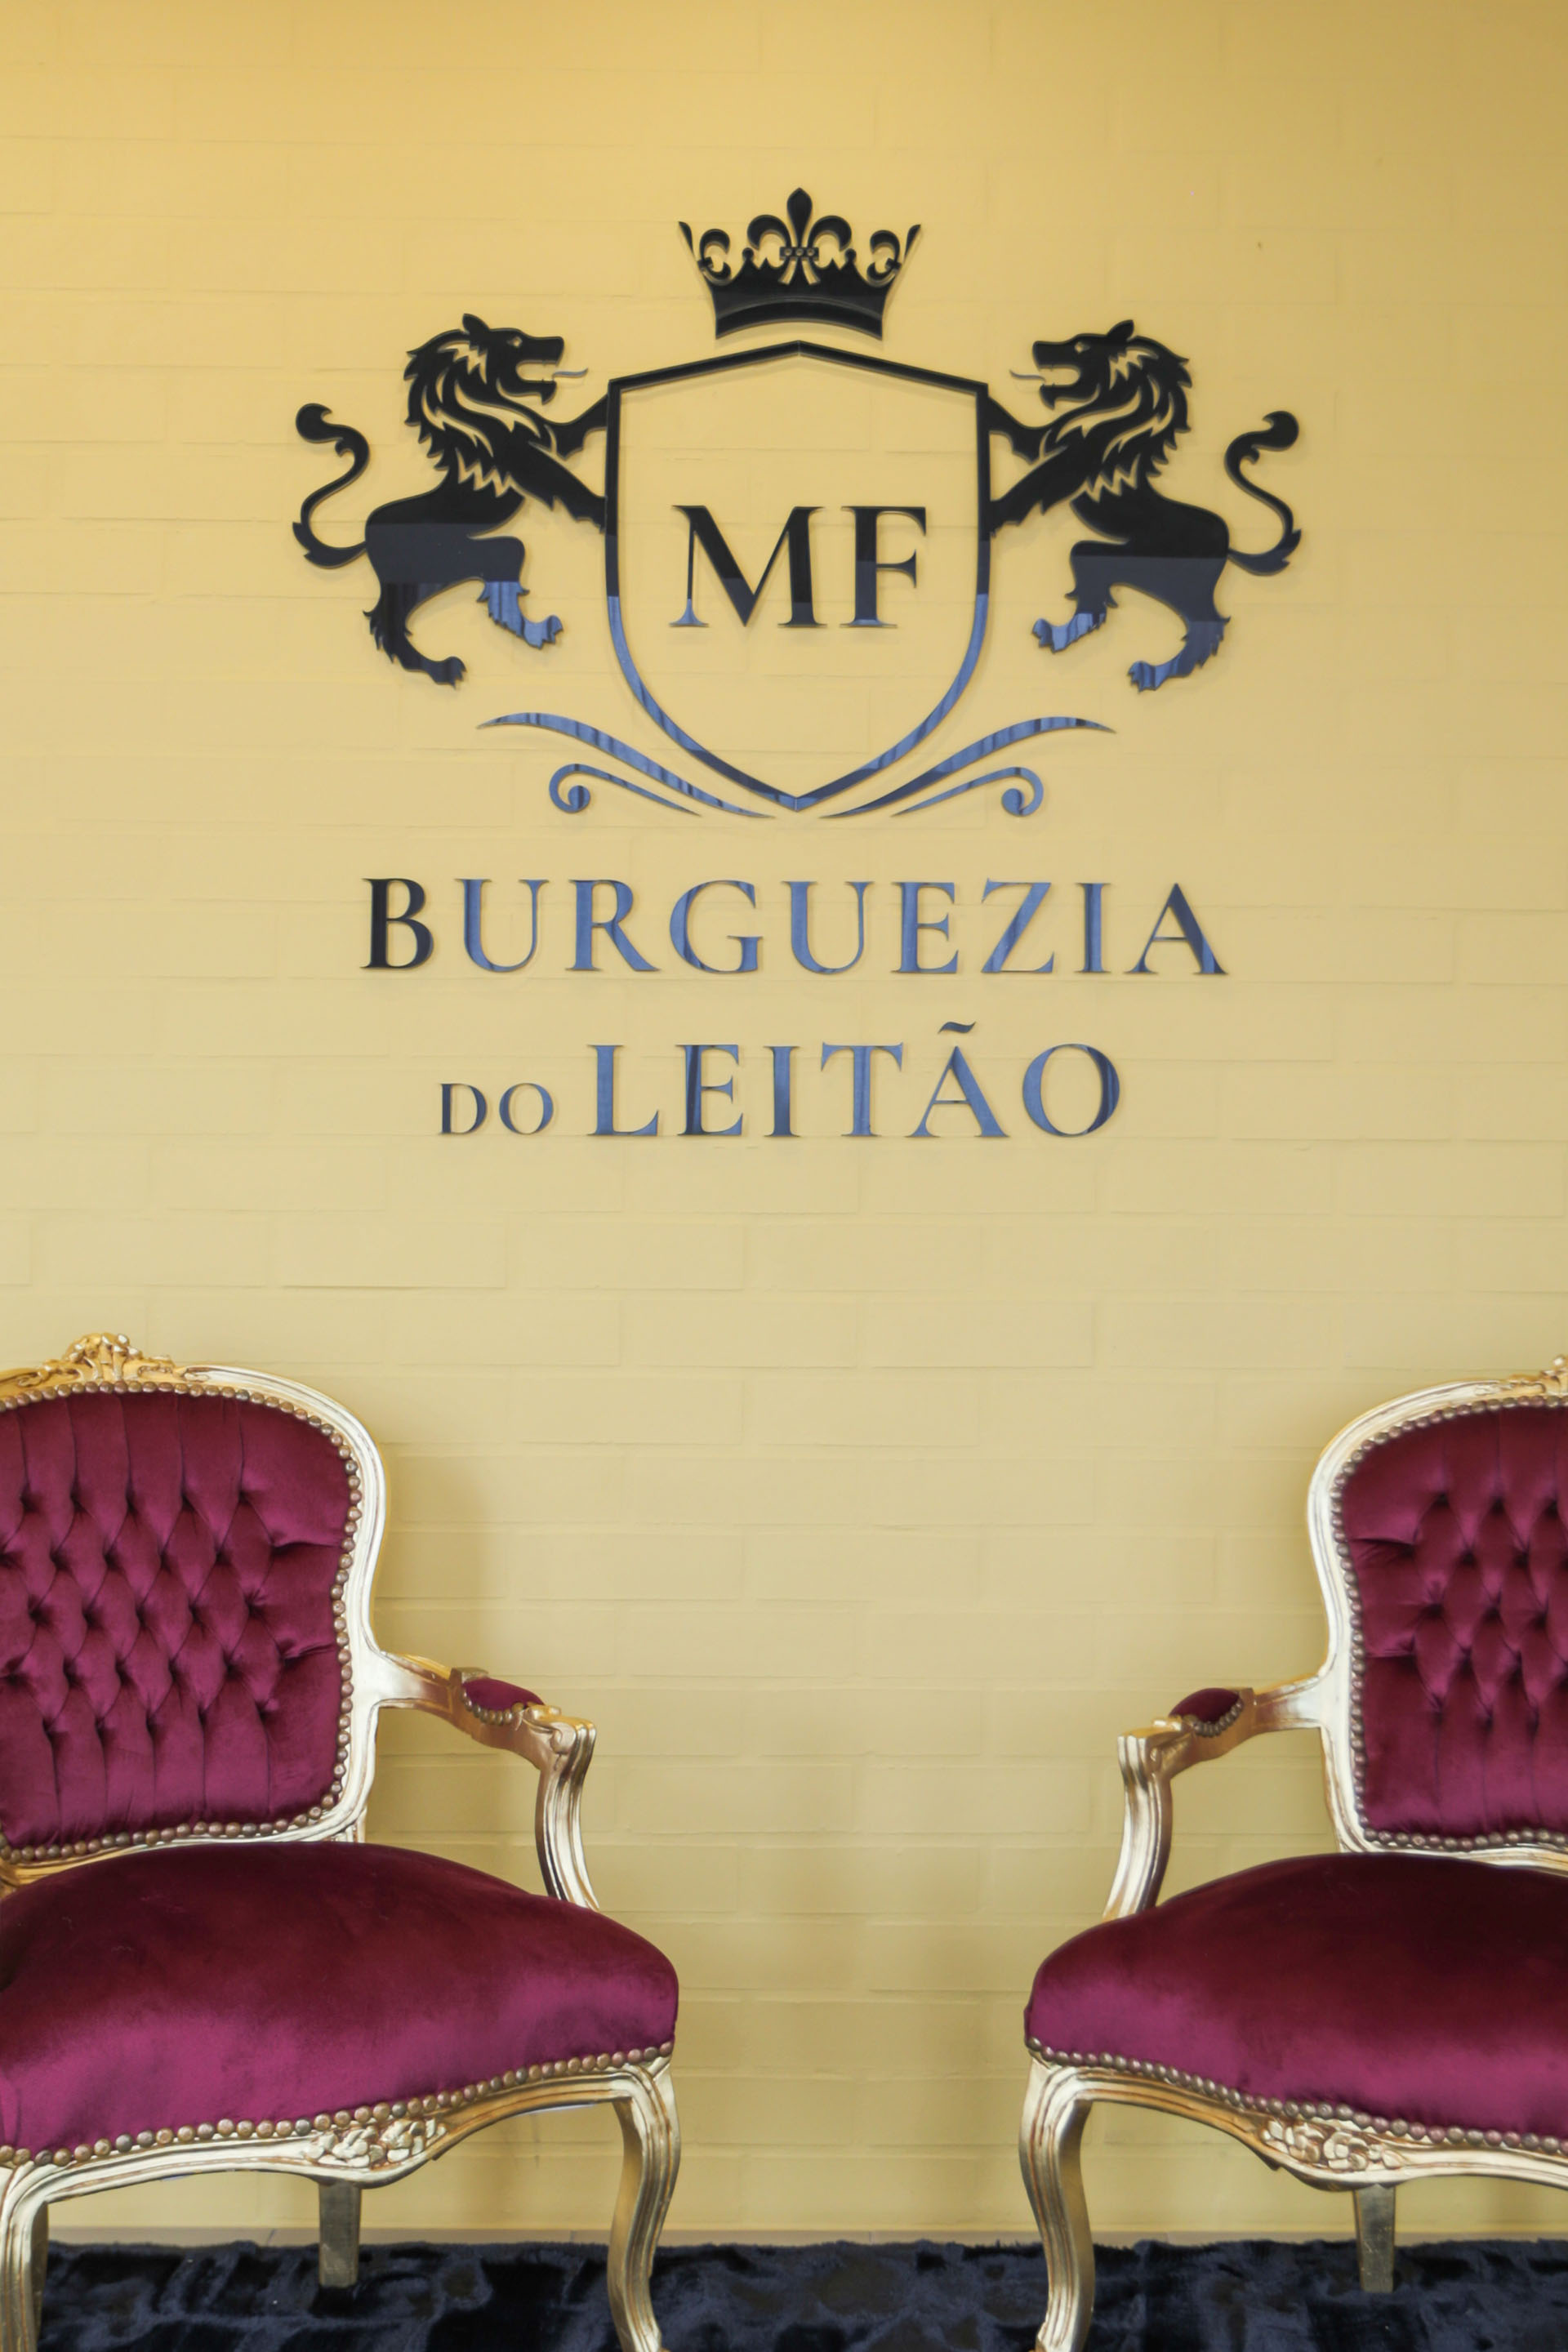 Burguezia do Leitão Restaurant